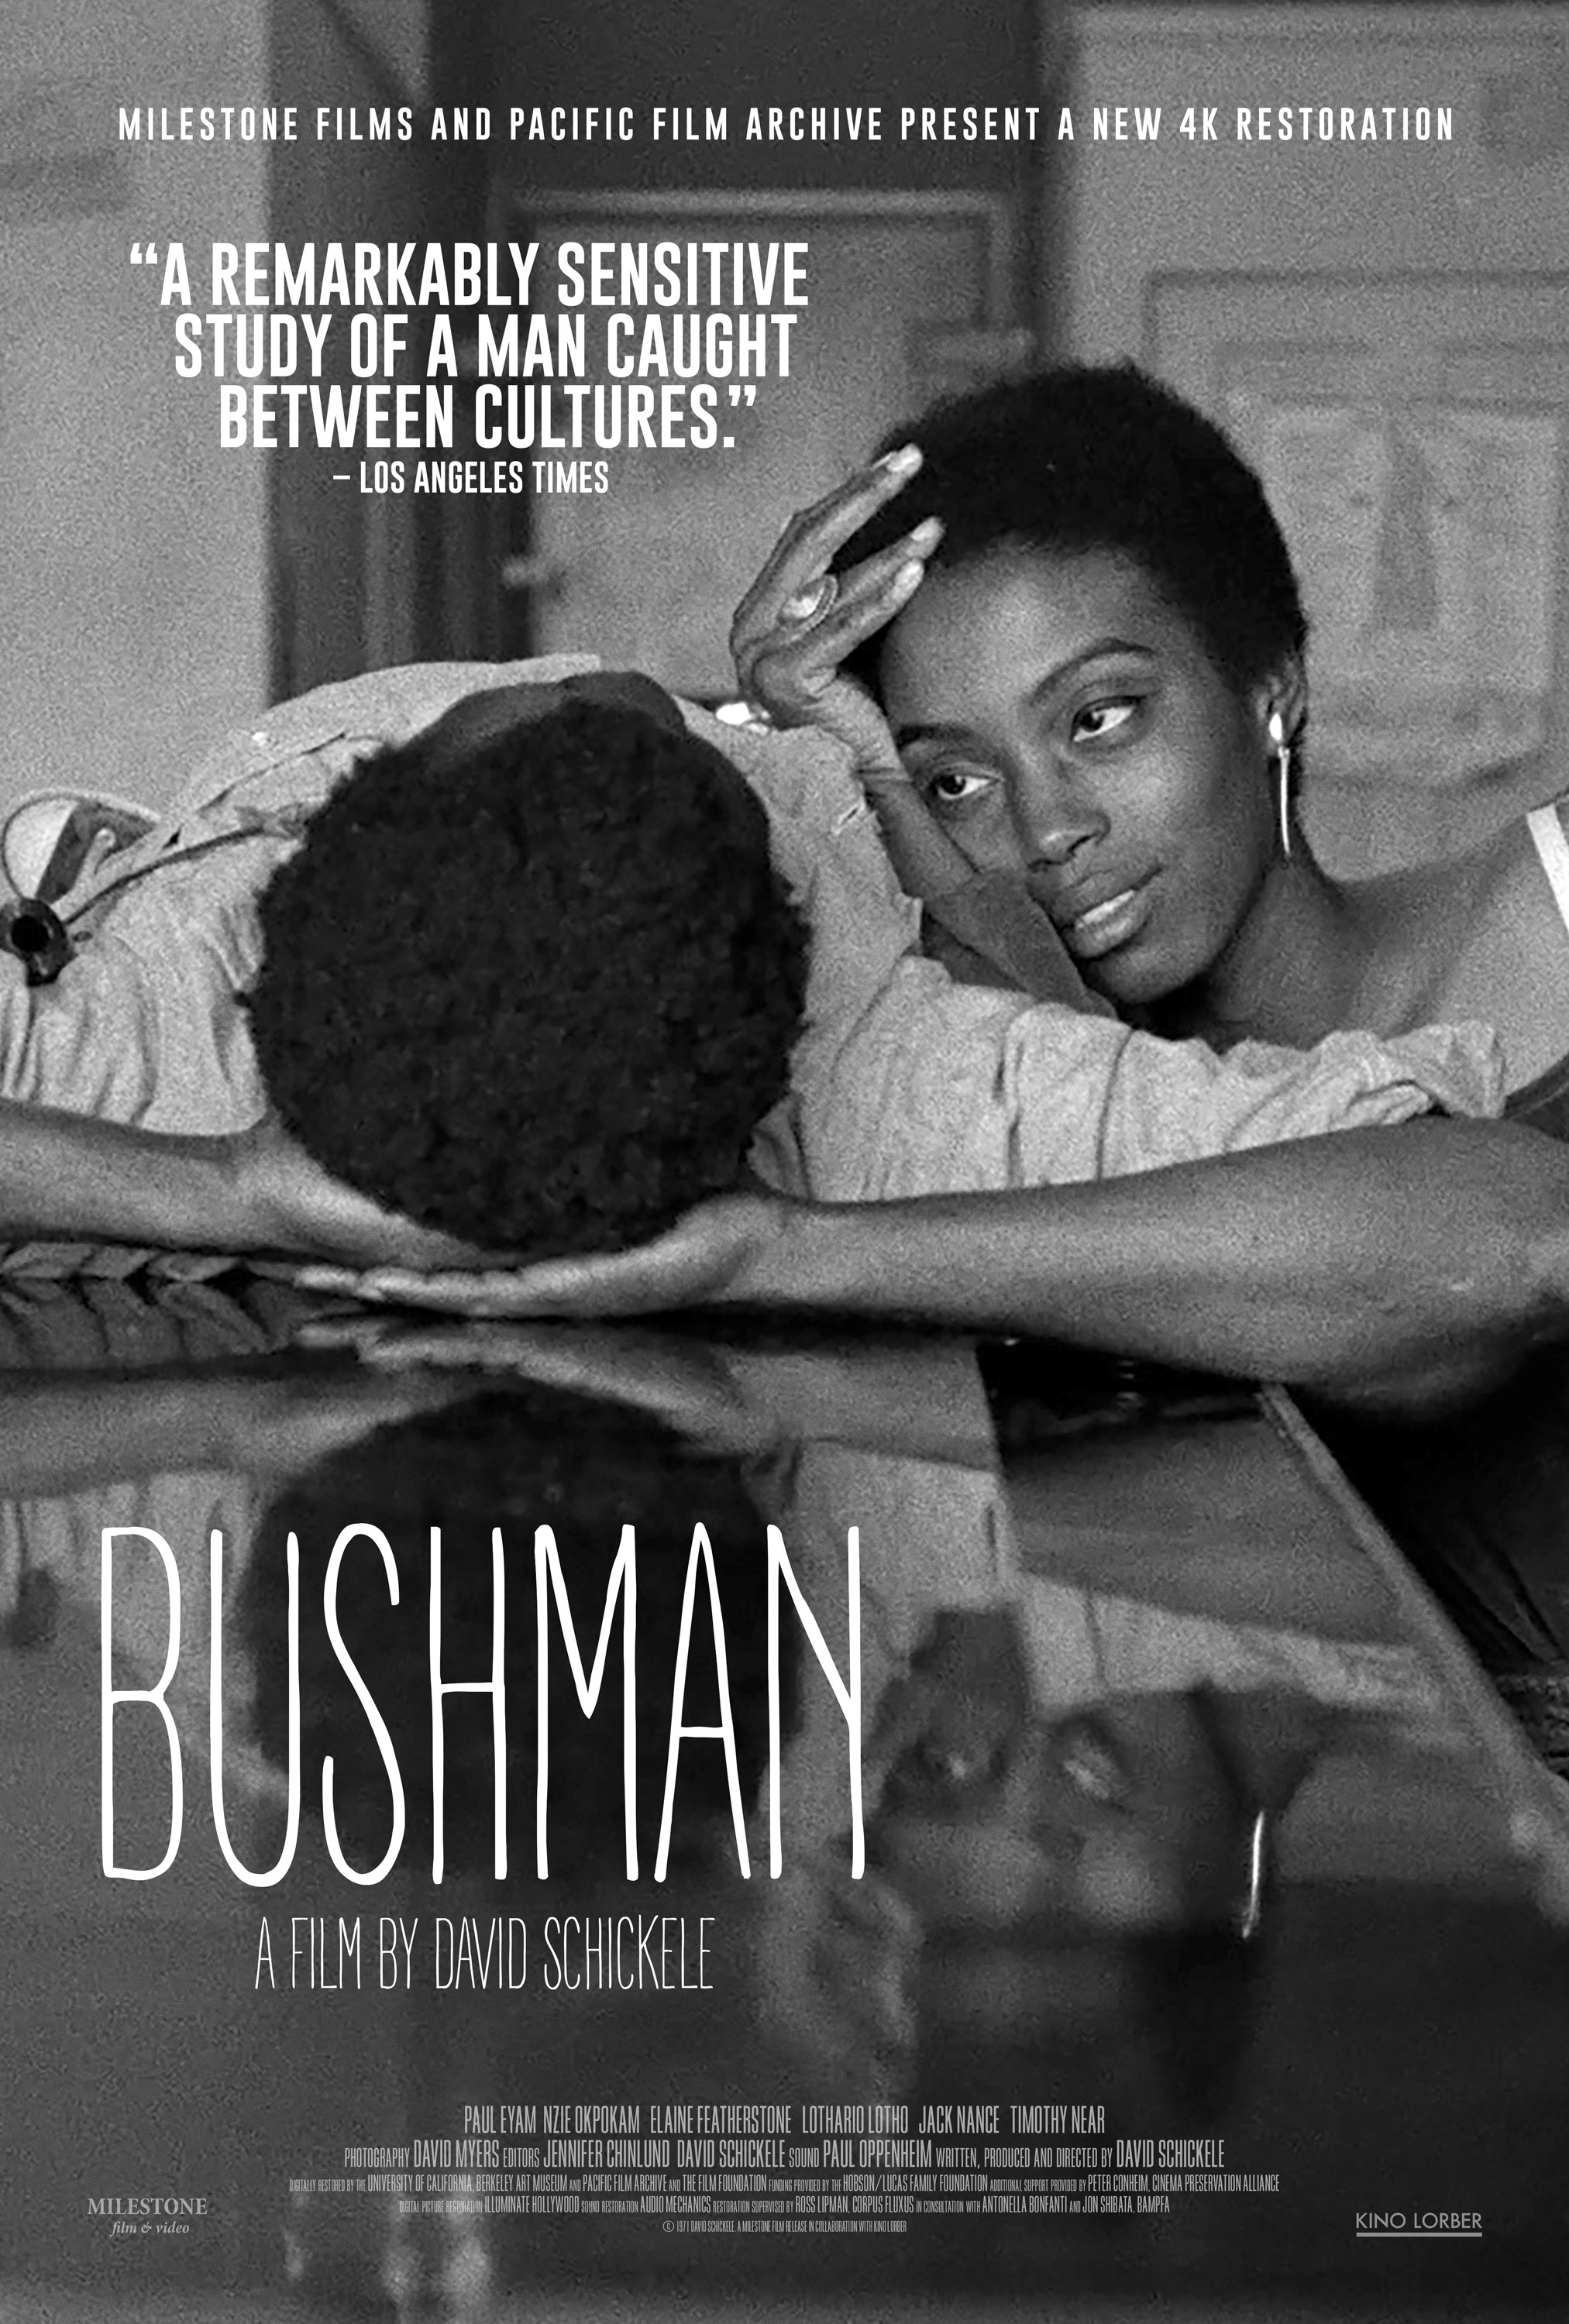 Bushman Poster